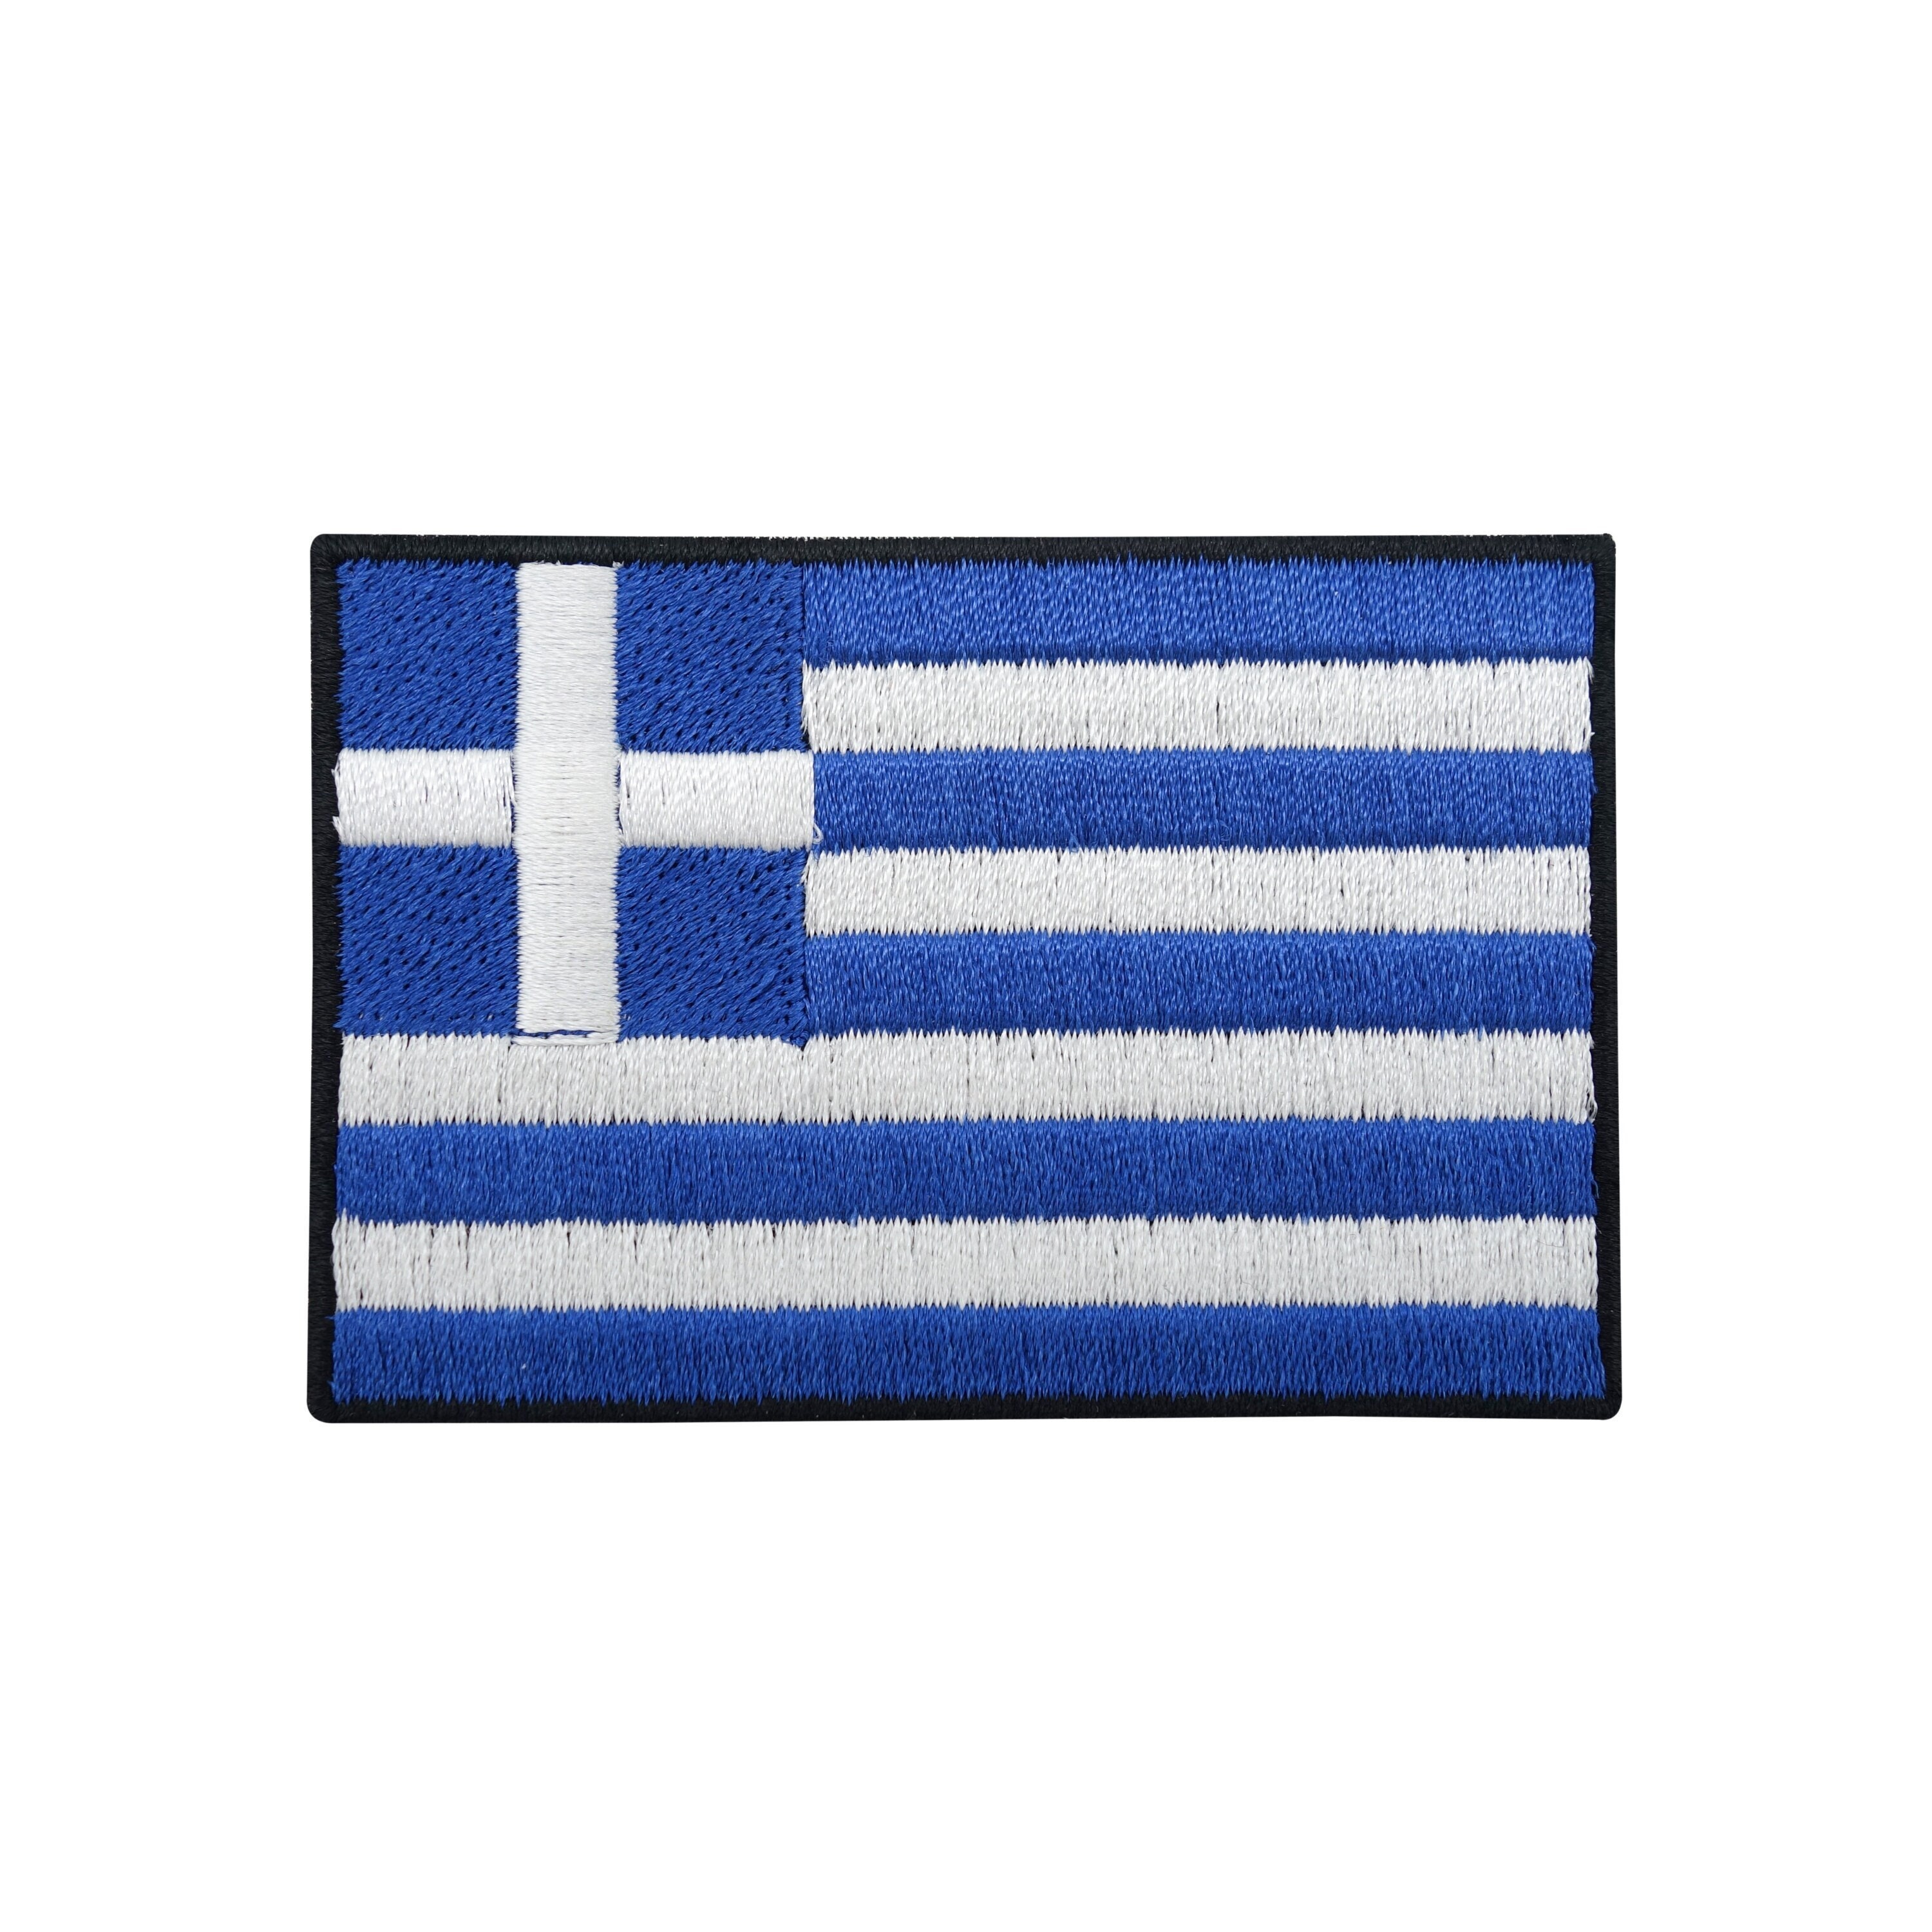 Griechische flagge - .de